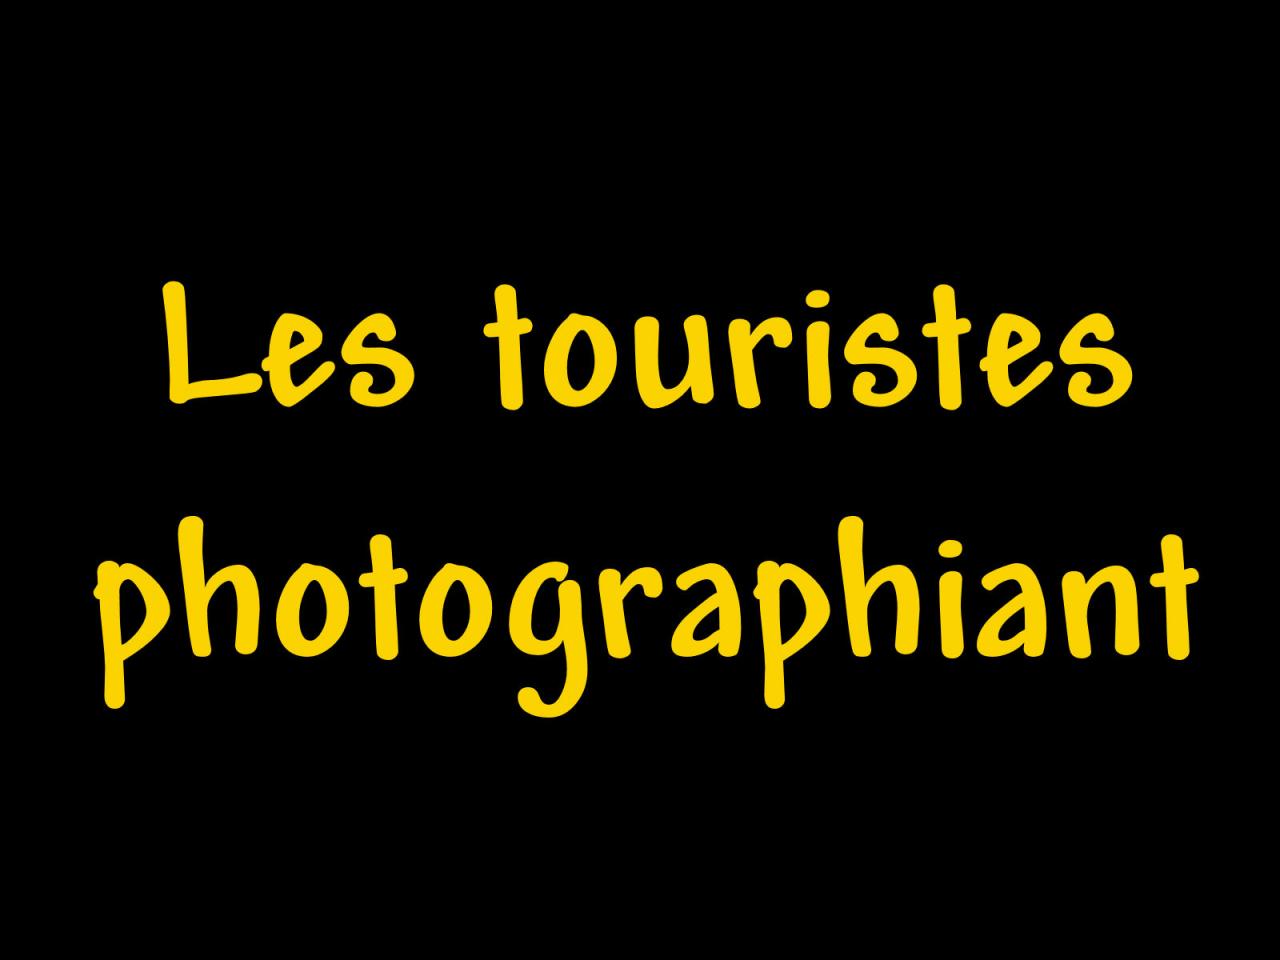 Les touristes photographiant